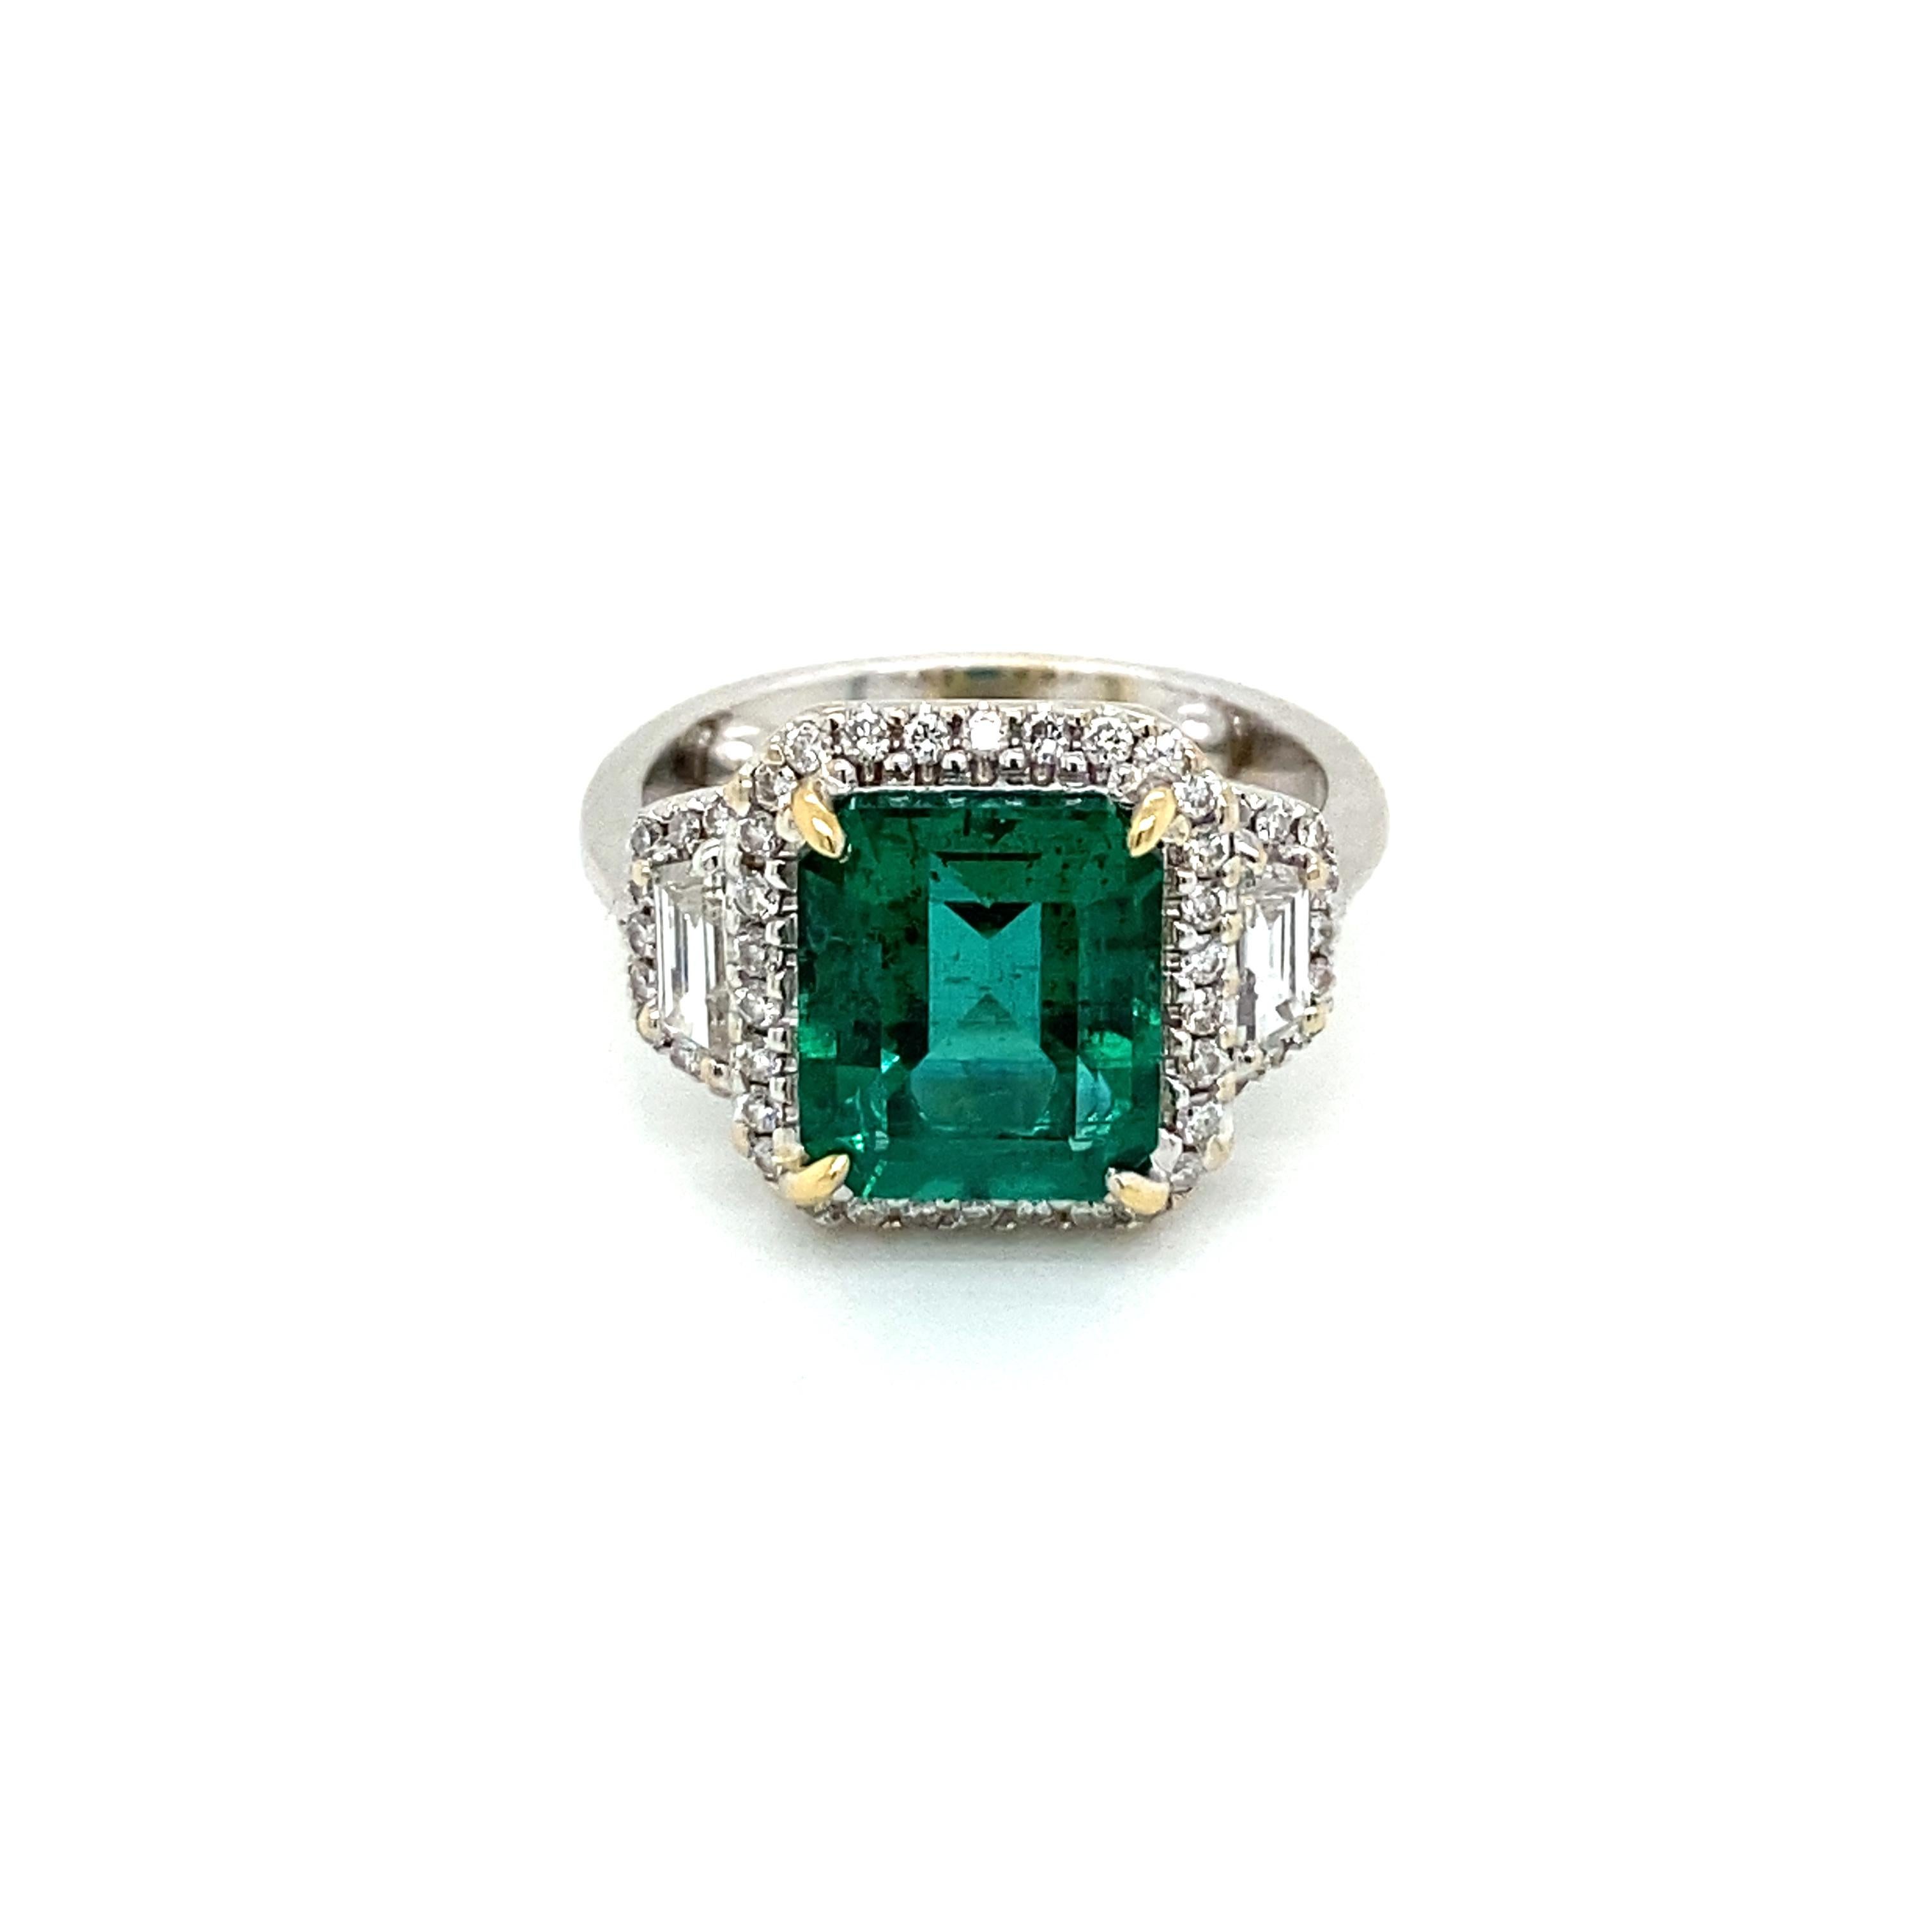 Ein exquisiter Ring aus 18 Karat Weißgold mit einem seltenen, lebhaften 3,34-karätigen Stein. Sambischer Smaragd im Smaragdschliff, umgeben von 2 Karat funkelnden Diamanten in runder und Baguette-Form, eingestuft in der Farbe G, Reinheit Vvs1.

Die